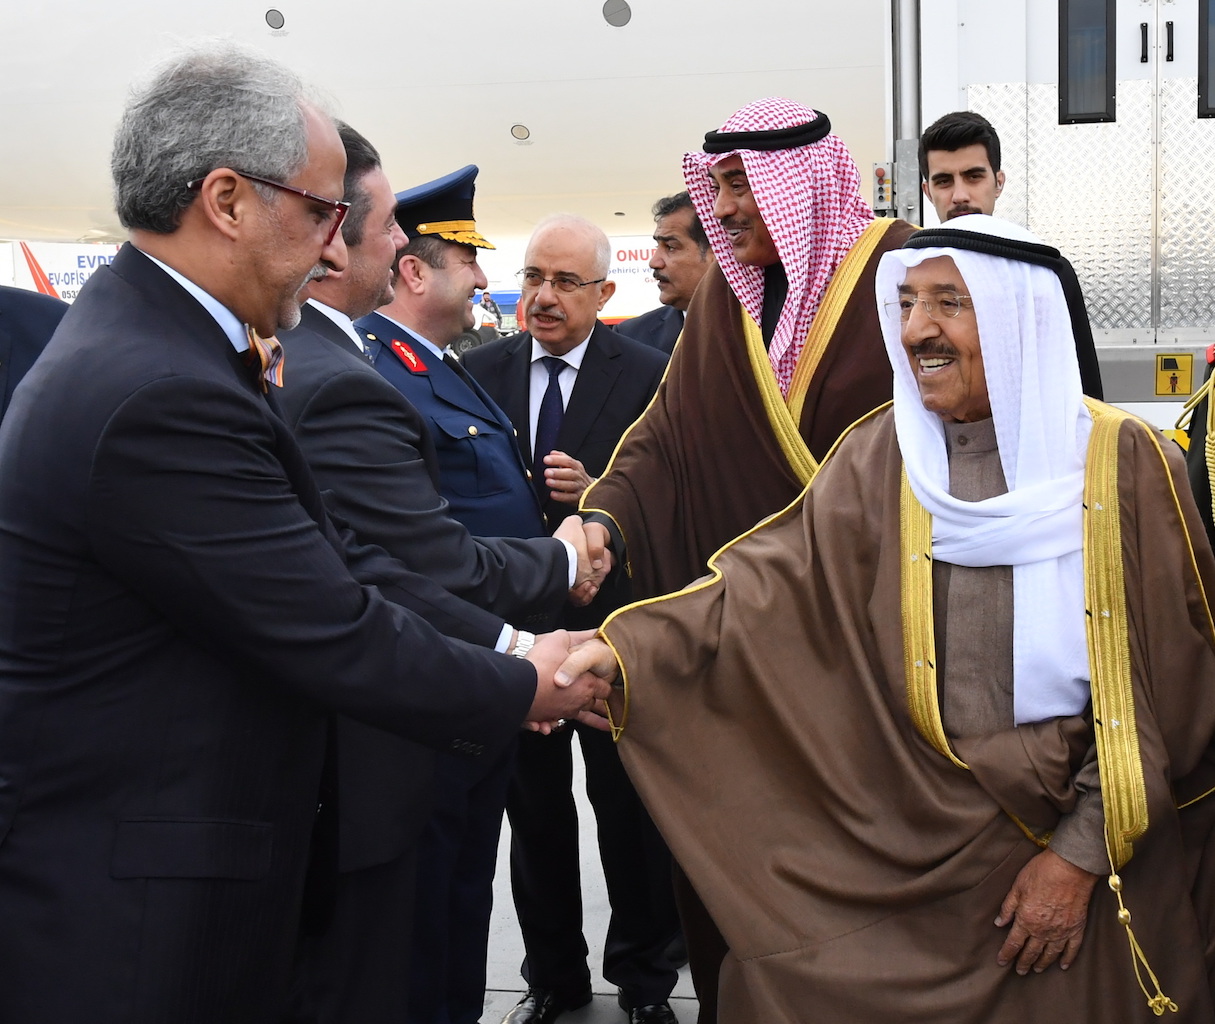 His Highness the Amir Sheikh Sabah Al-Ahmad Al-Jaber Al-Sabah arrived in Istanbul